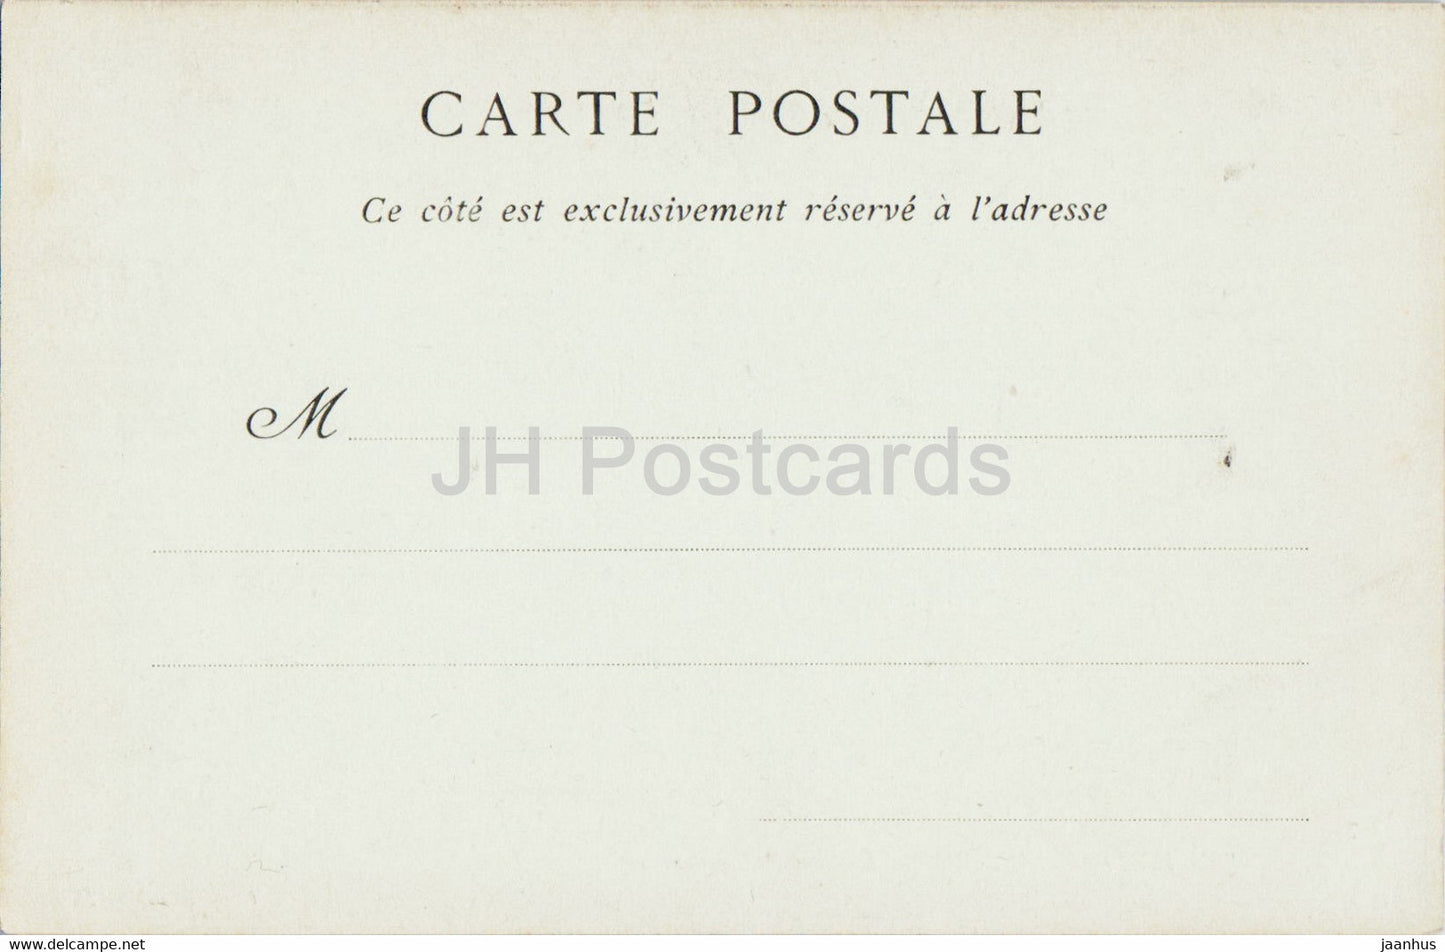 Fontainebleau - La Sous Prefecture - 79 - old postcard - France - unused